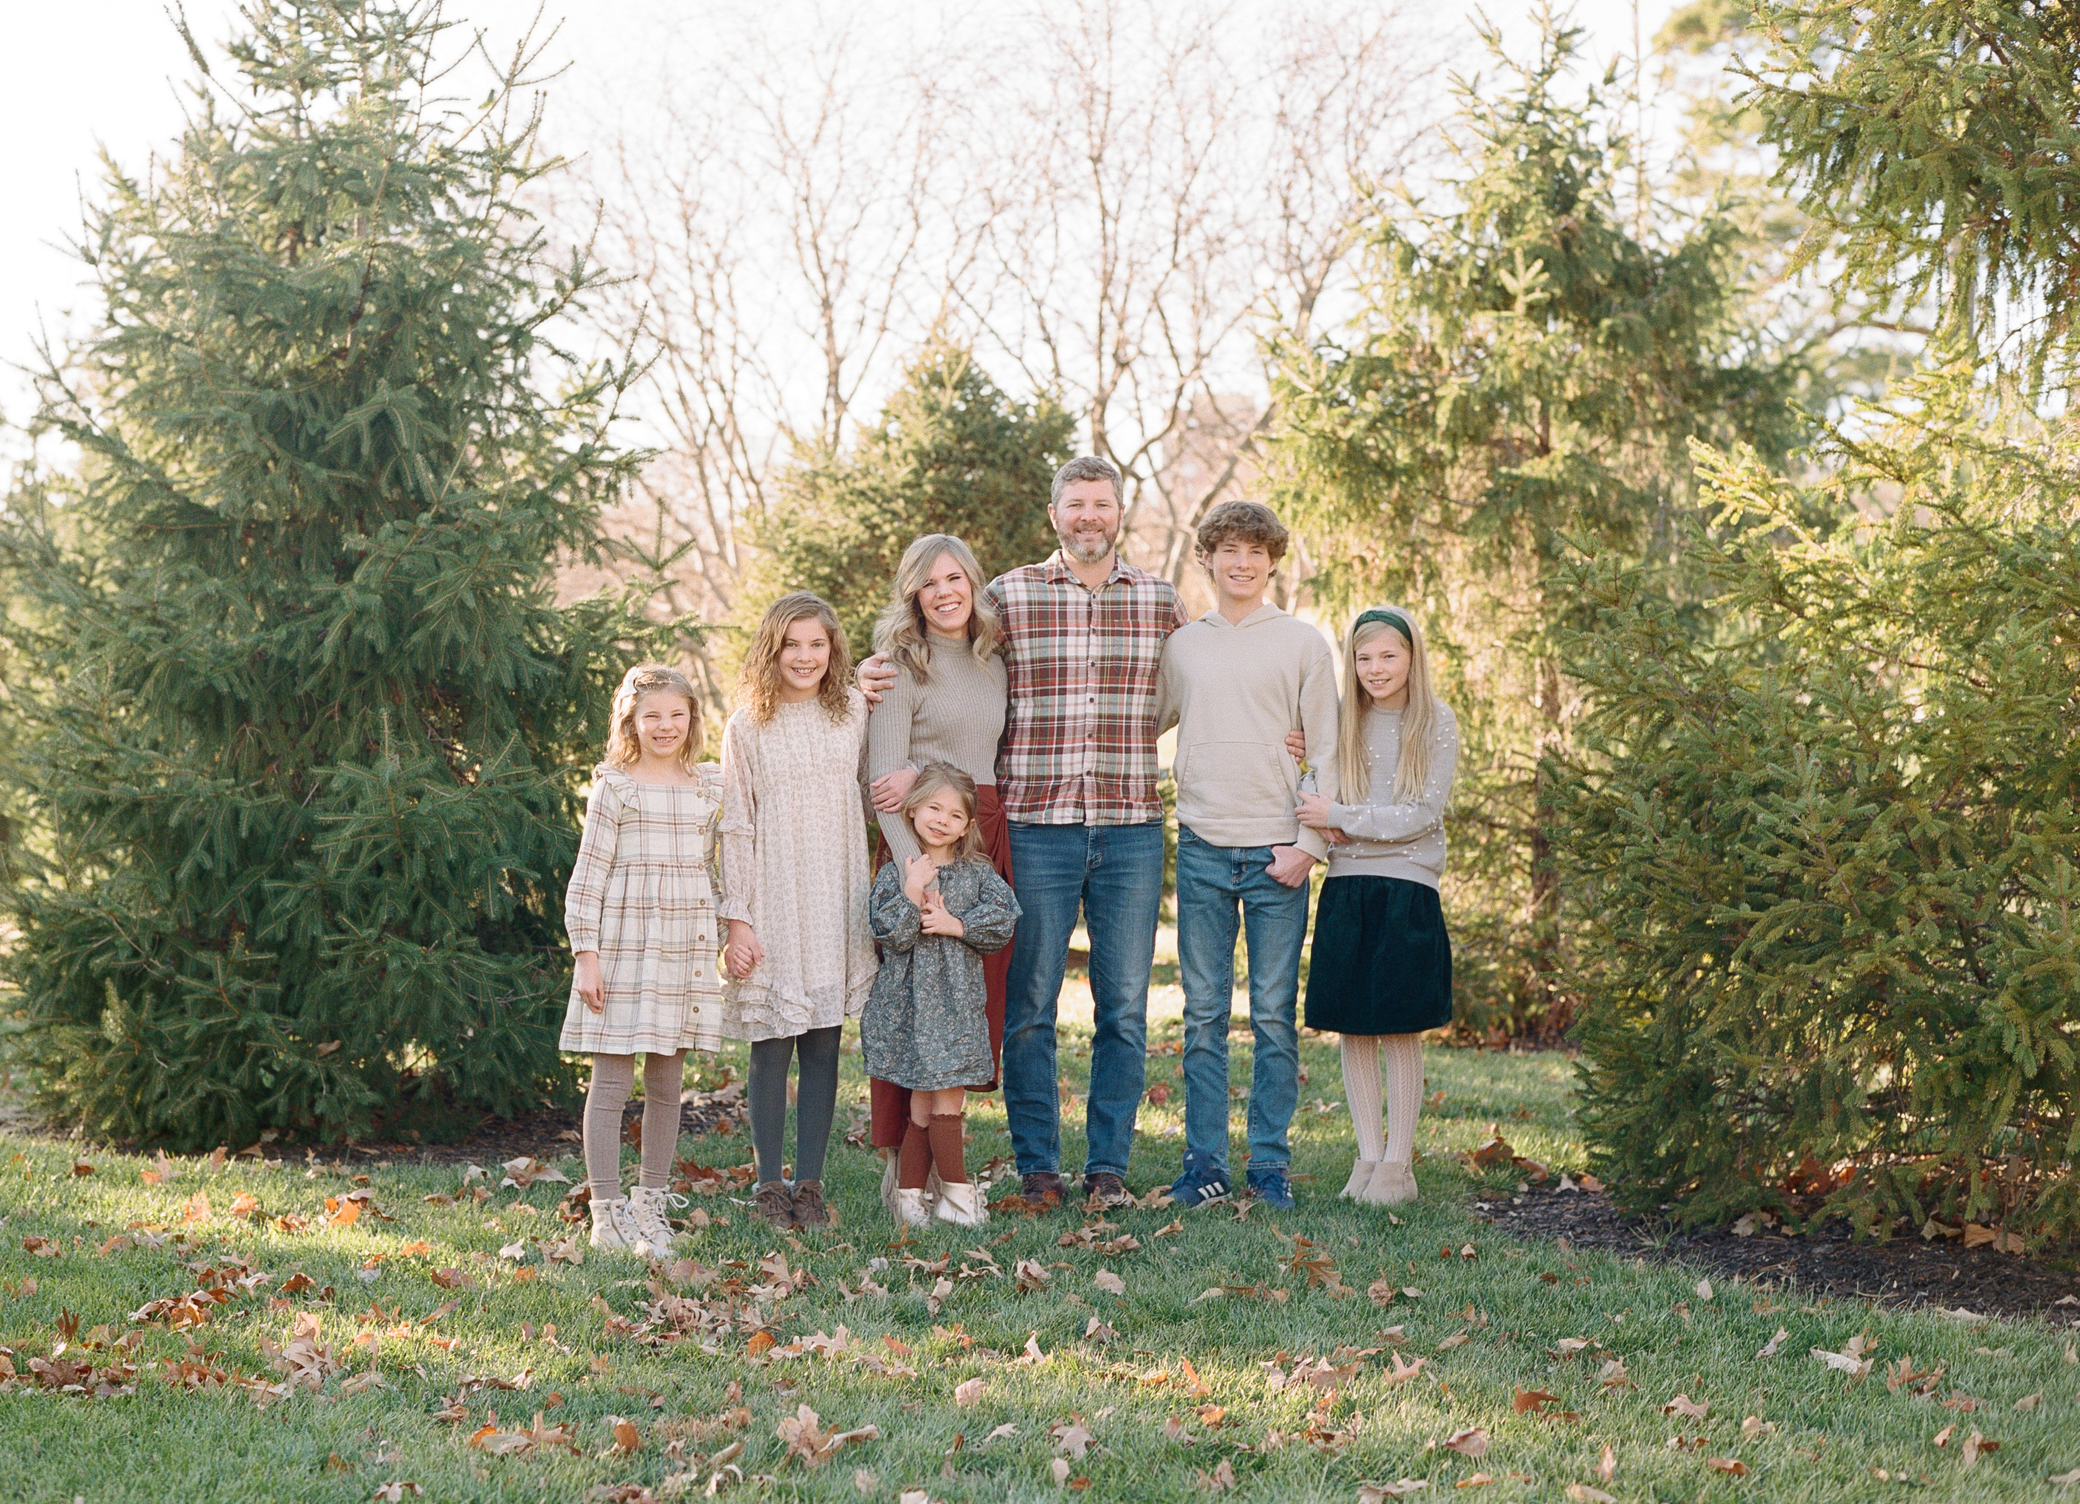 2 - Kansas City Family Photographer Holiday photos for family of 7 Alissa Bird Portraits